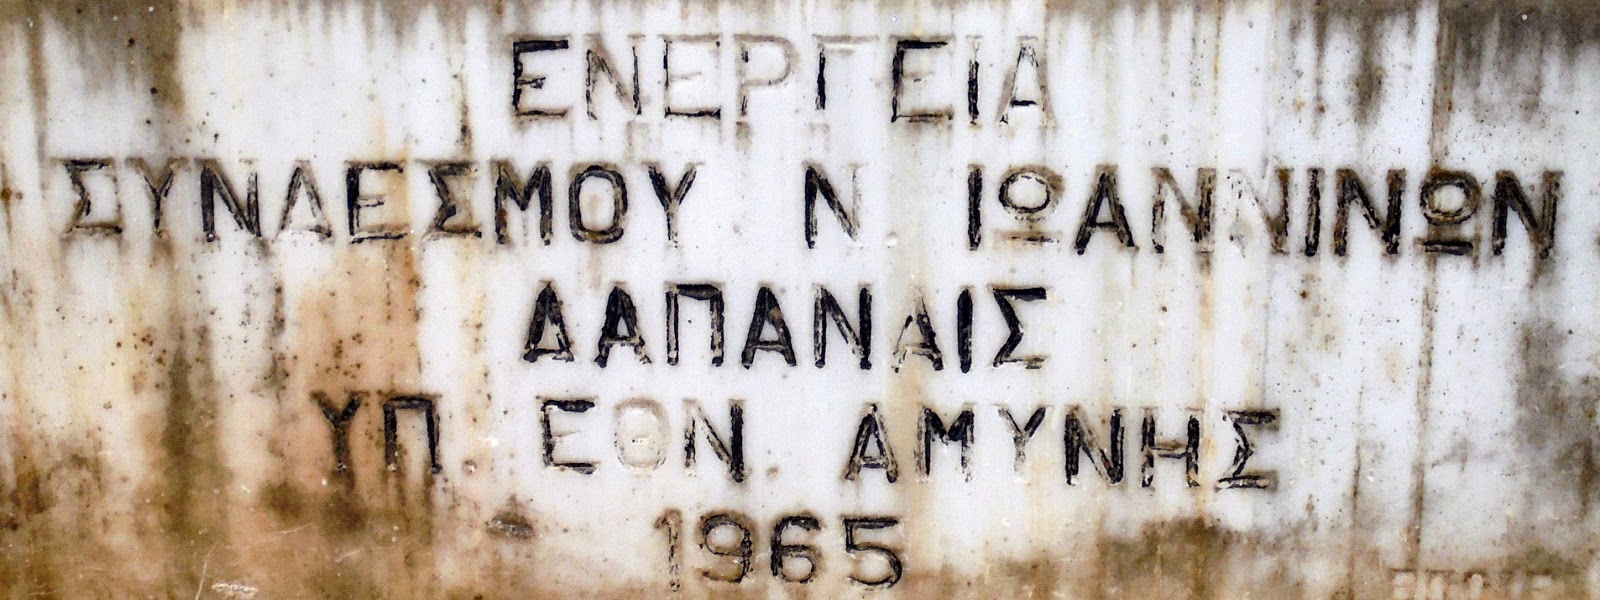 το μνημείο της Εθνικής Αντίστασης στην επαρχιακή οδών Ιωαννίνων - Άρτας